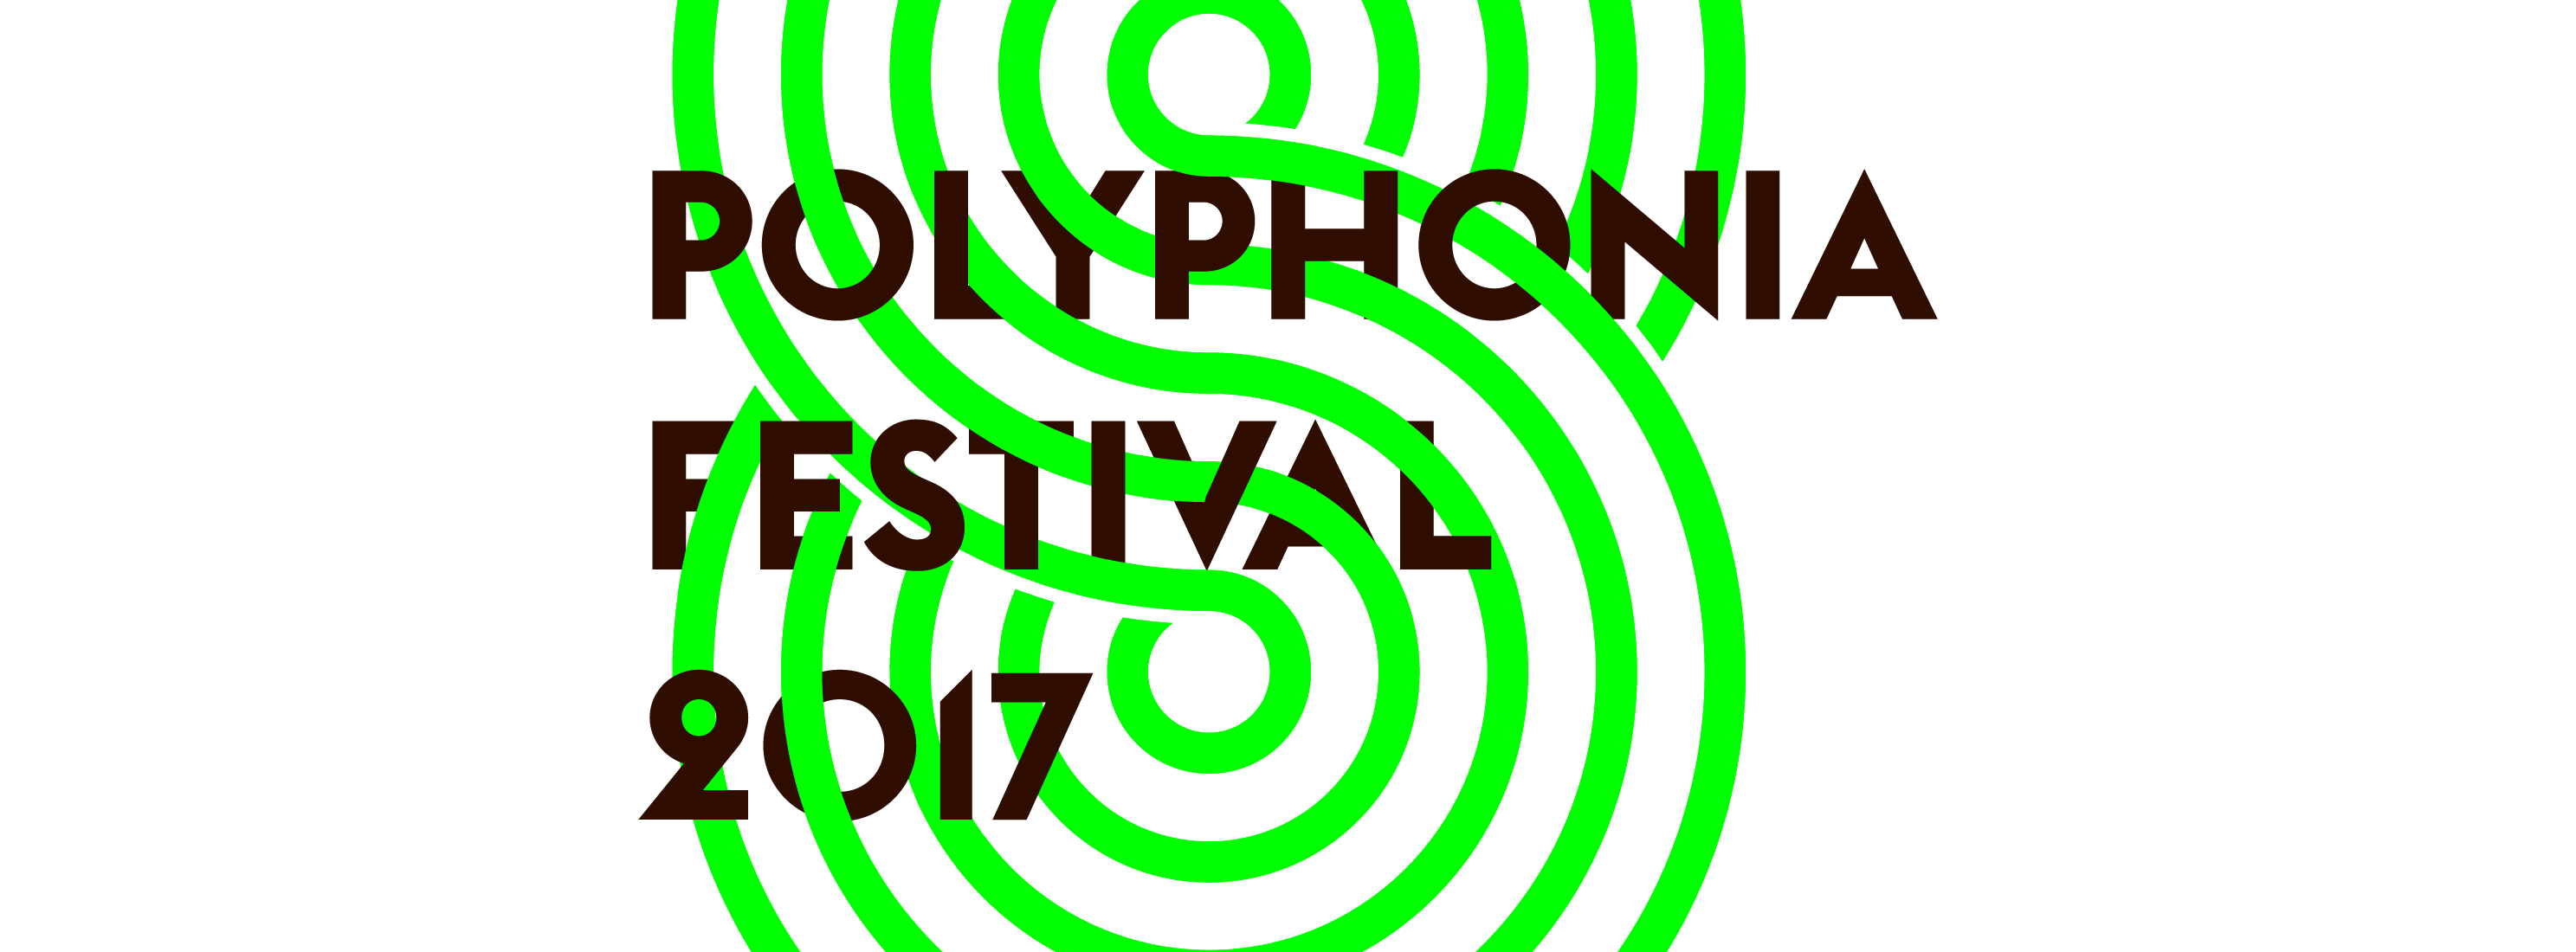 Polyphonia Festival 2017 (źródło: materiały prasowe organizatora)